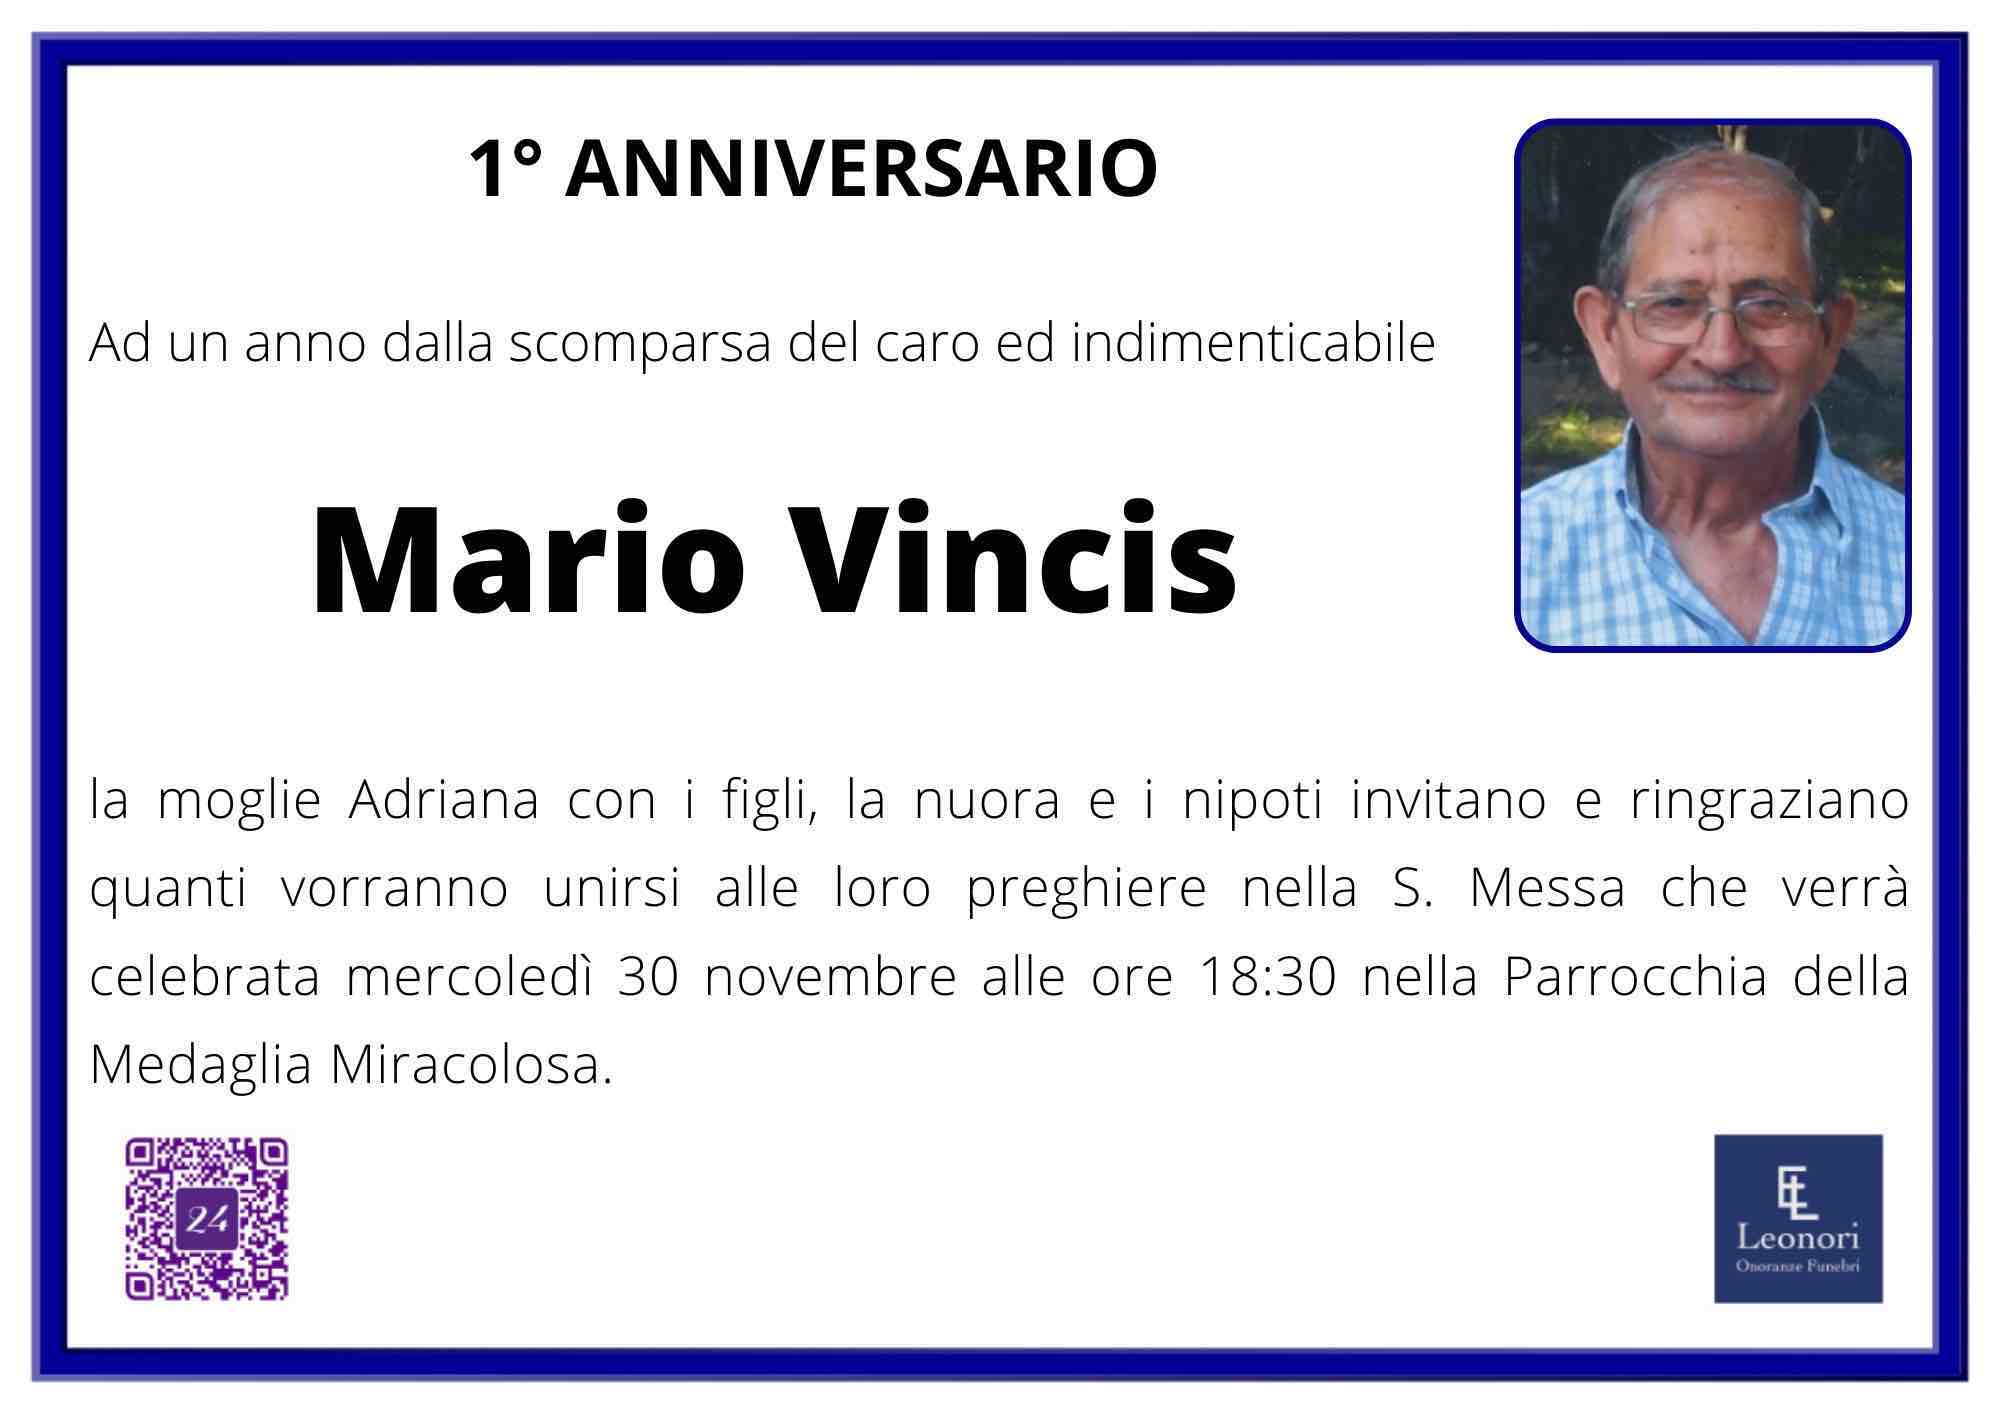 Mario Vincis